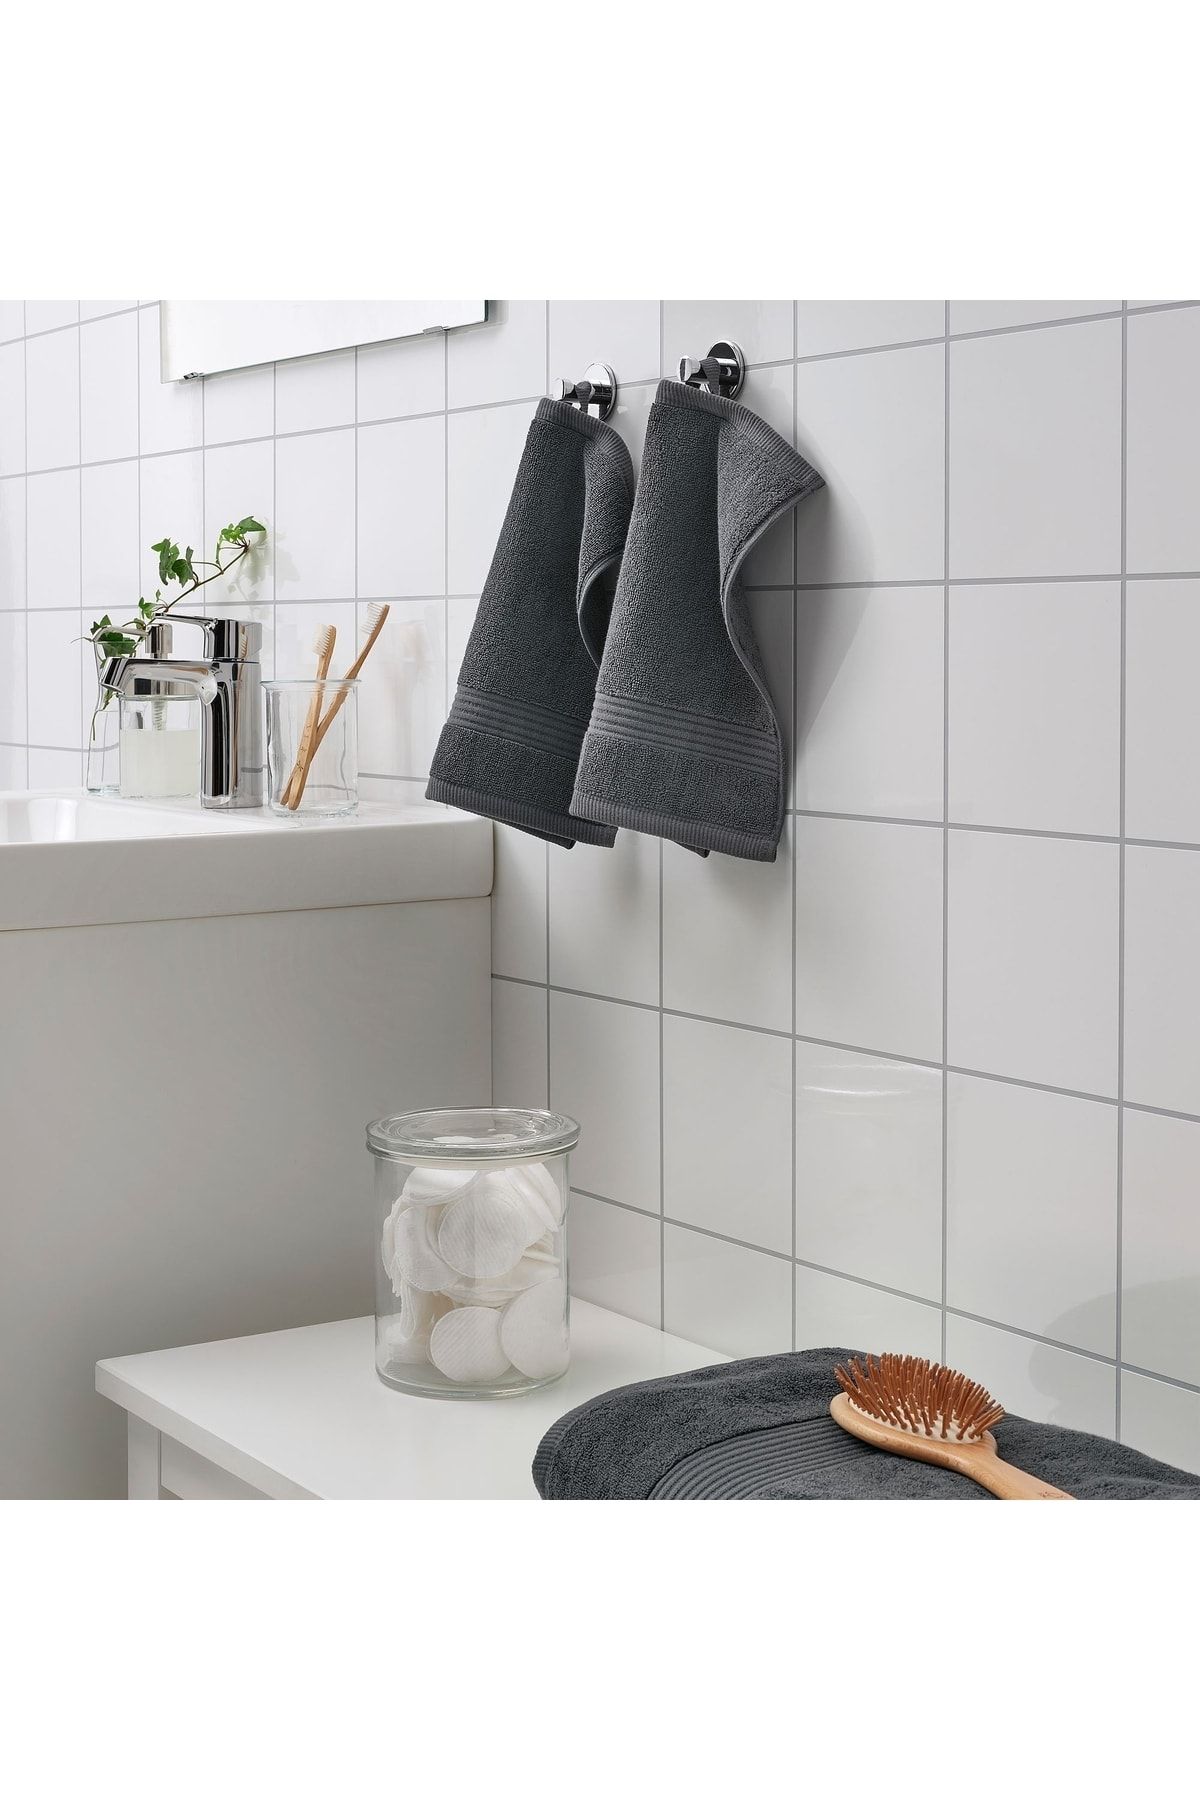 IKEA 3 Adet Küçük Banyo Havlusu 30x30 Cm El Yüz Havlusu 3 Lü Set Koyu Gri Pamuk